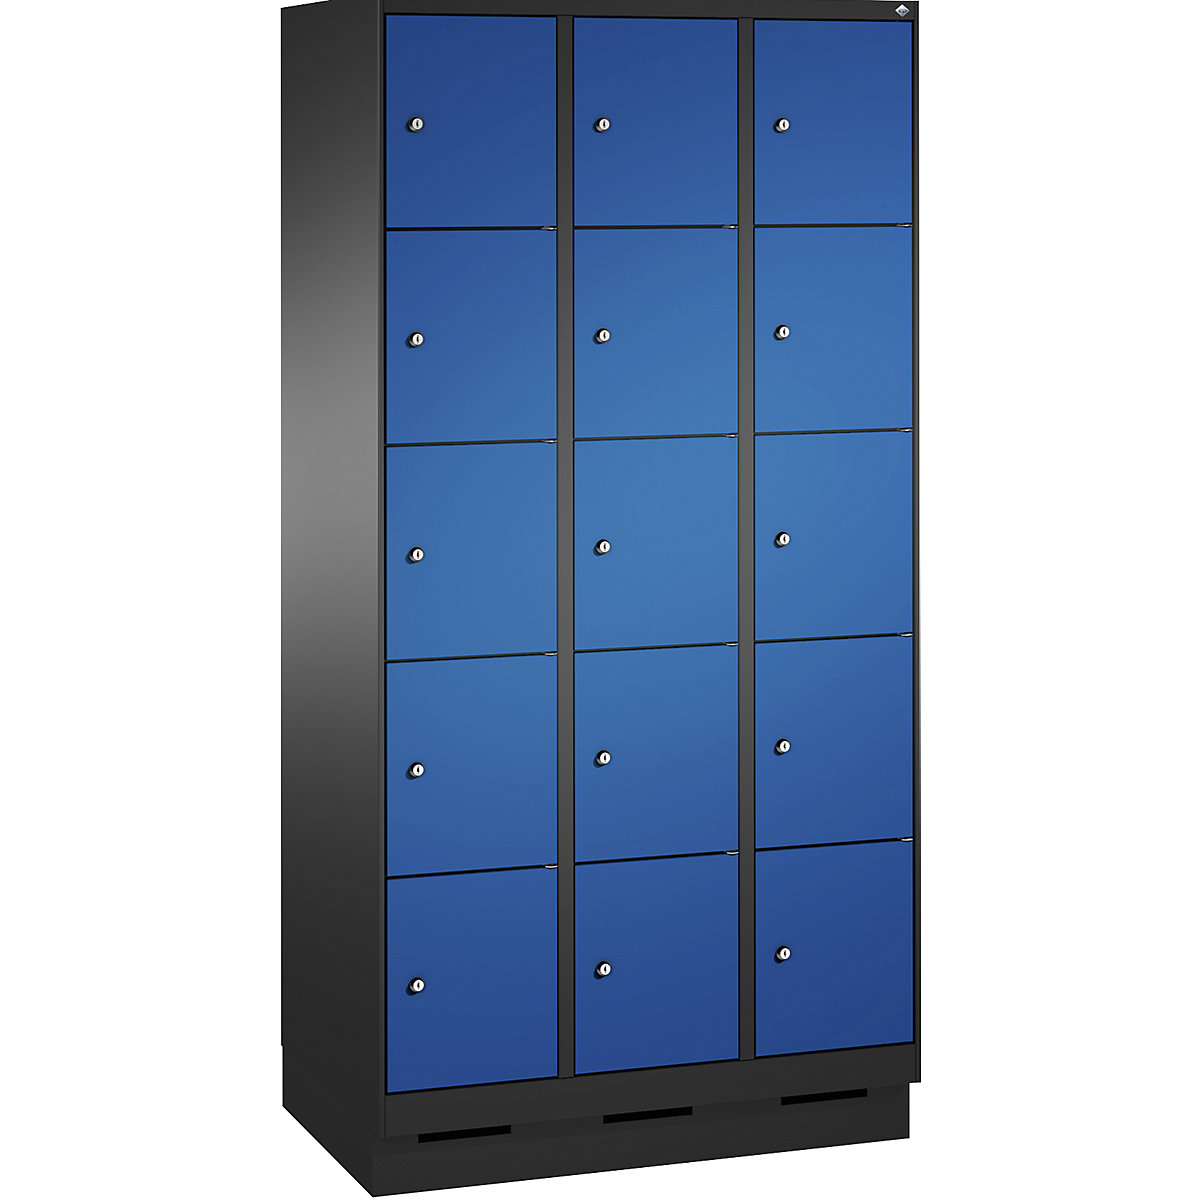 Armoire à casiers sur socle EVOLO – C+P, 3 compartiments, 5 casiers chacun, largeur compartiments 300 mm, gris noir / bleu gentiane-10